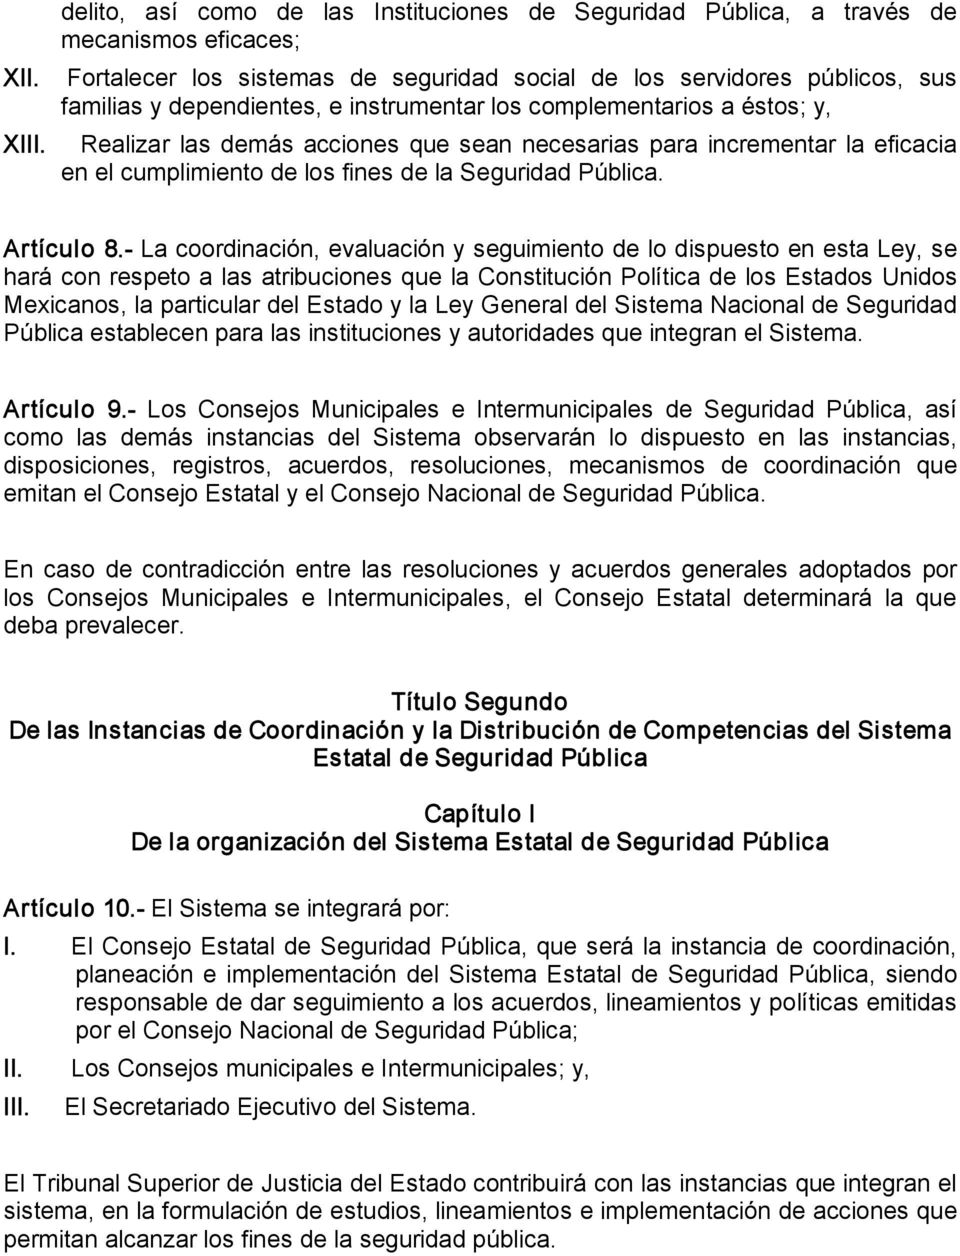 La coordinación, evaluación y seguimiento de lo dispuesto en esta Ley, se hará con respeto a las atribuciones que la Constitución Política de los Estados Unidos Mexicanos, la particular del Estado y